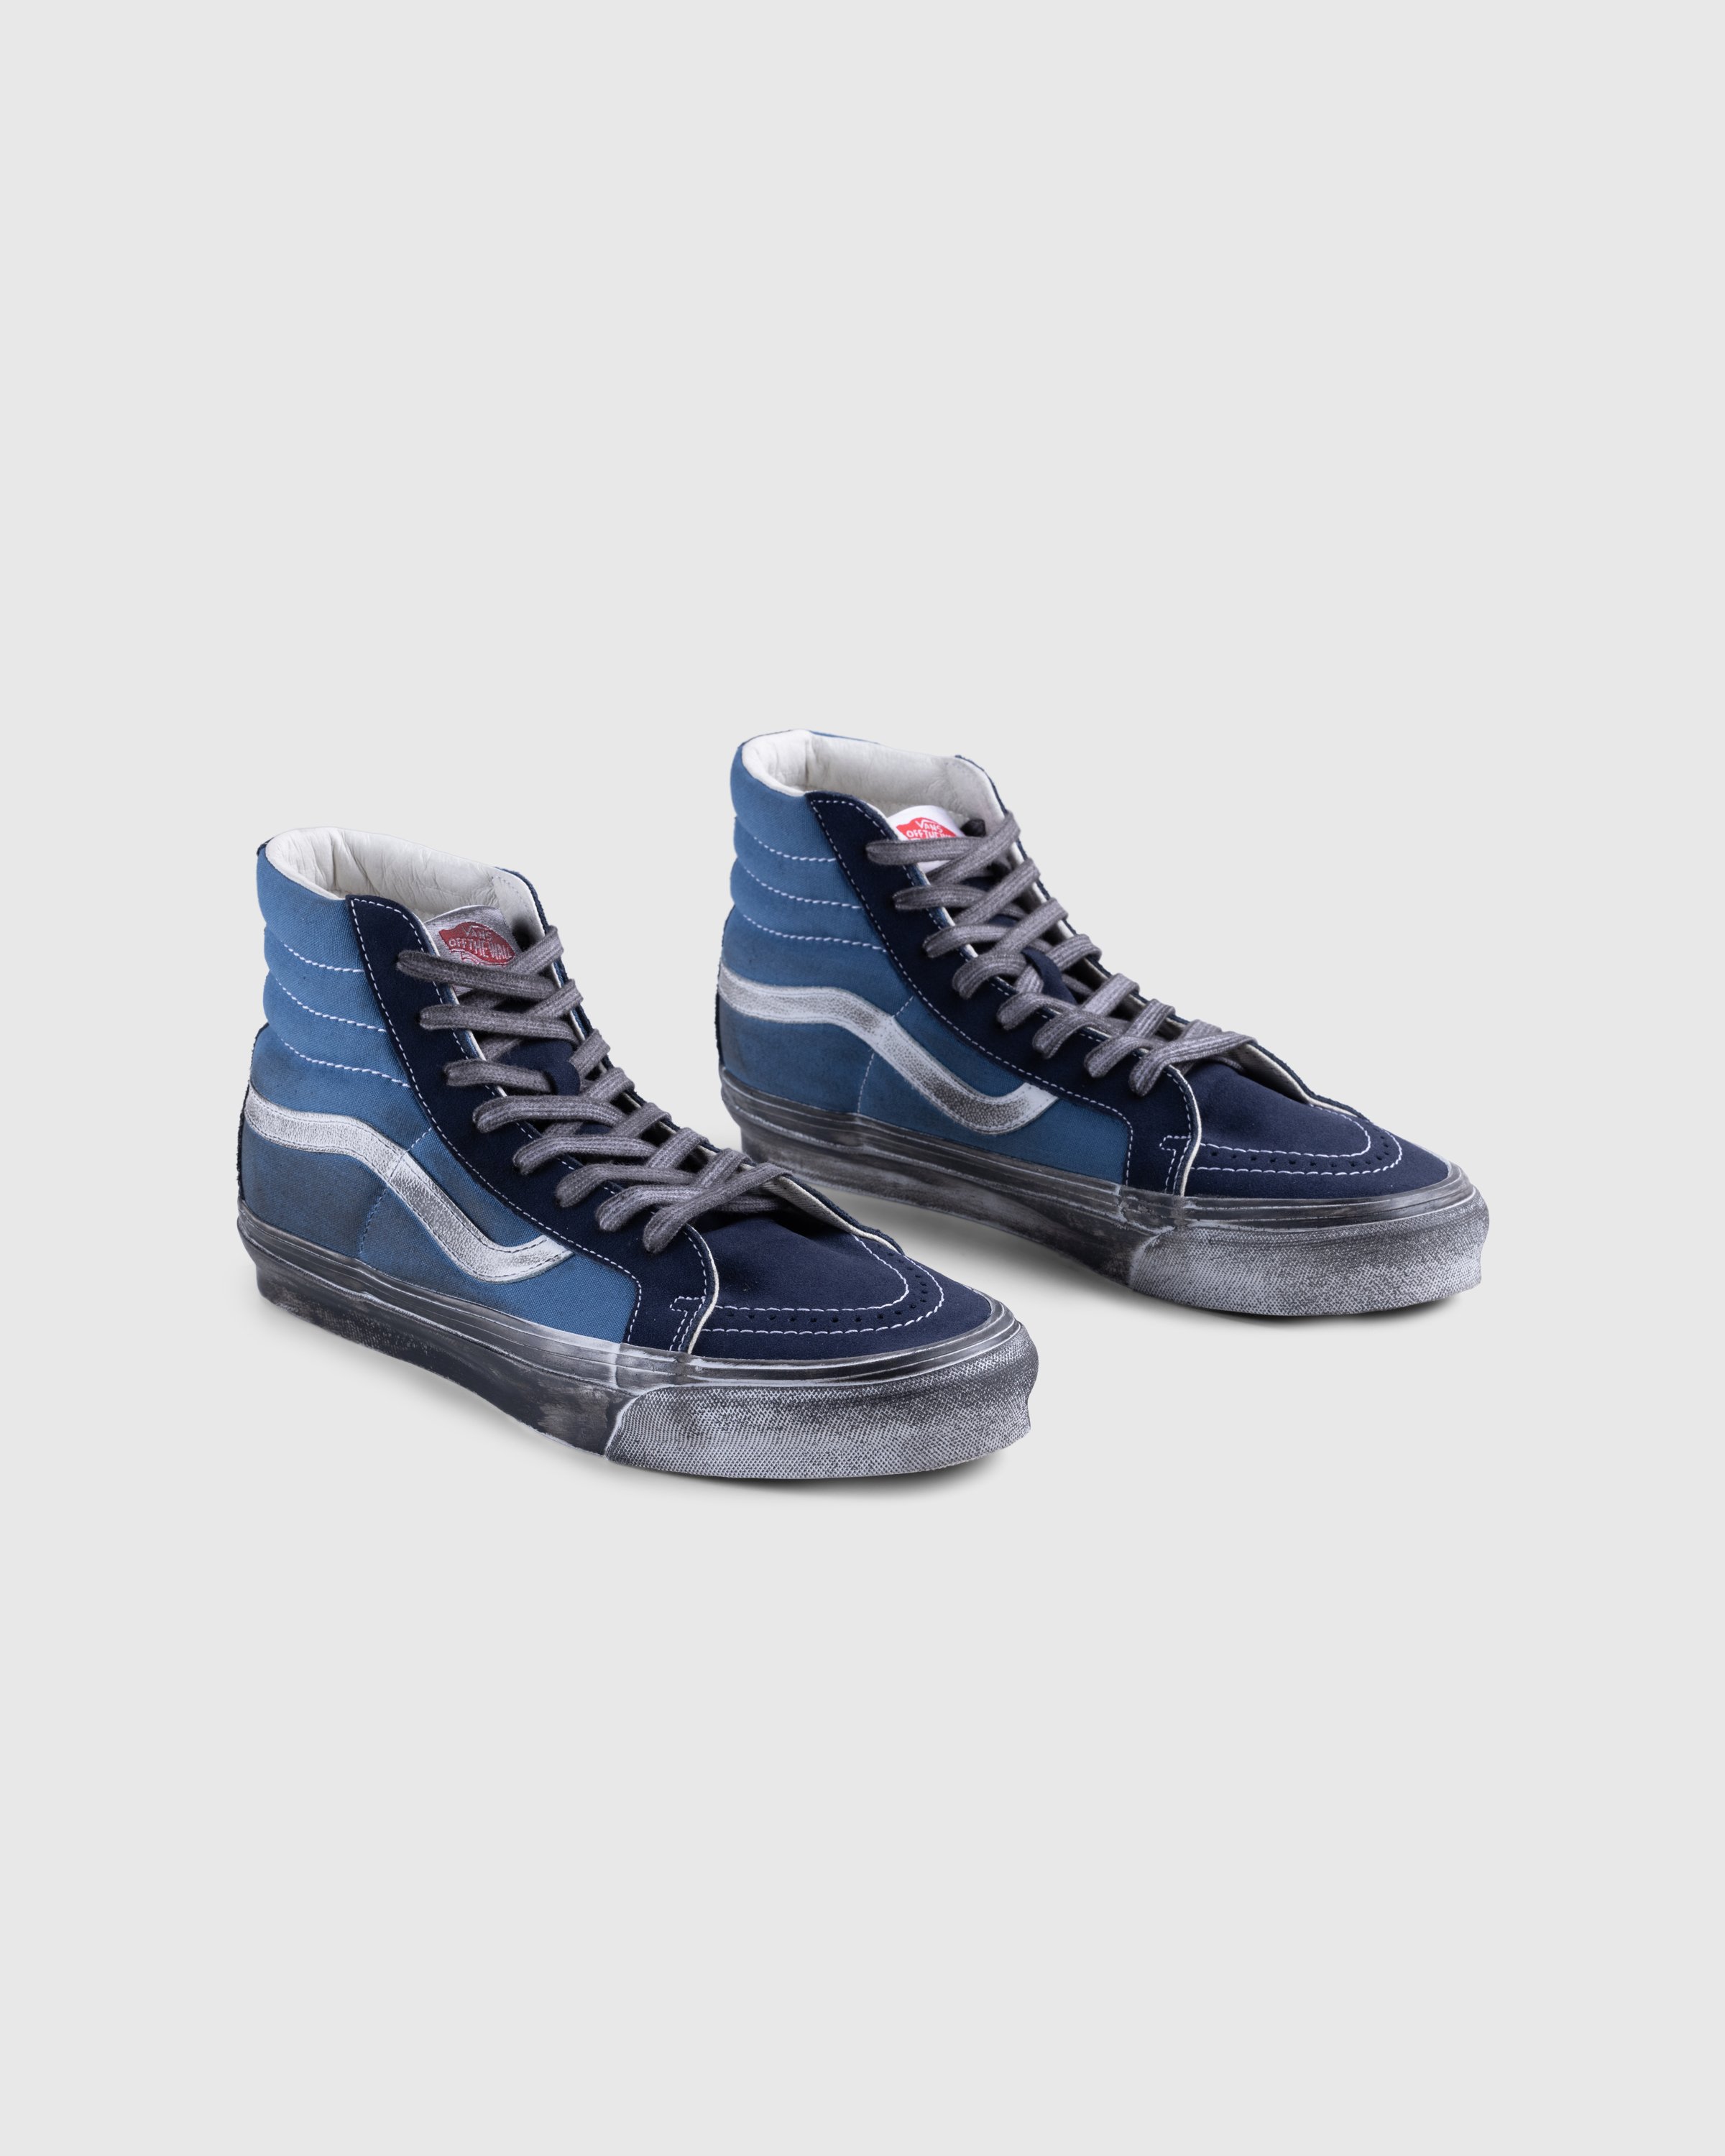 Vans - UA OG SK8-Hi LX STRE DKBRN - Footwear - Blue - Image 3